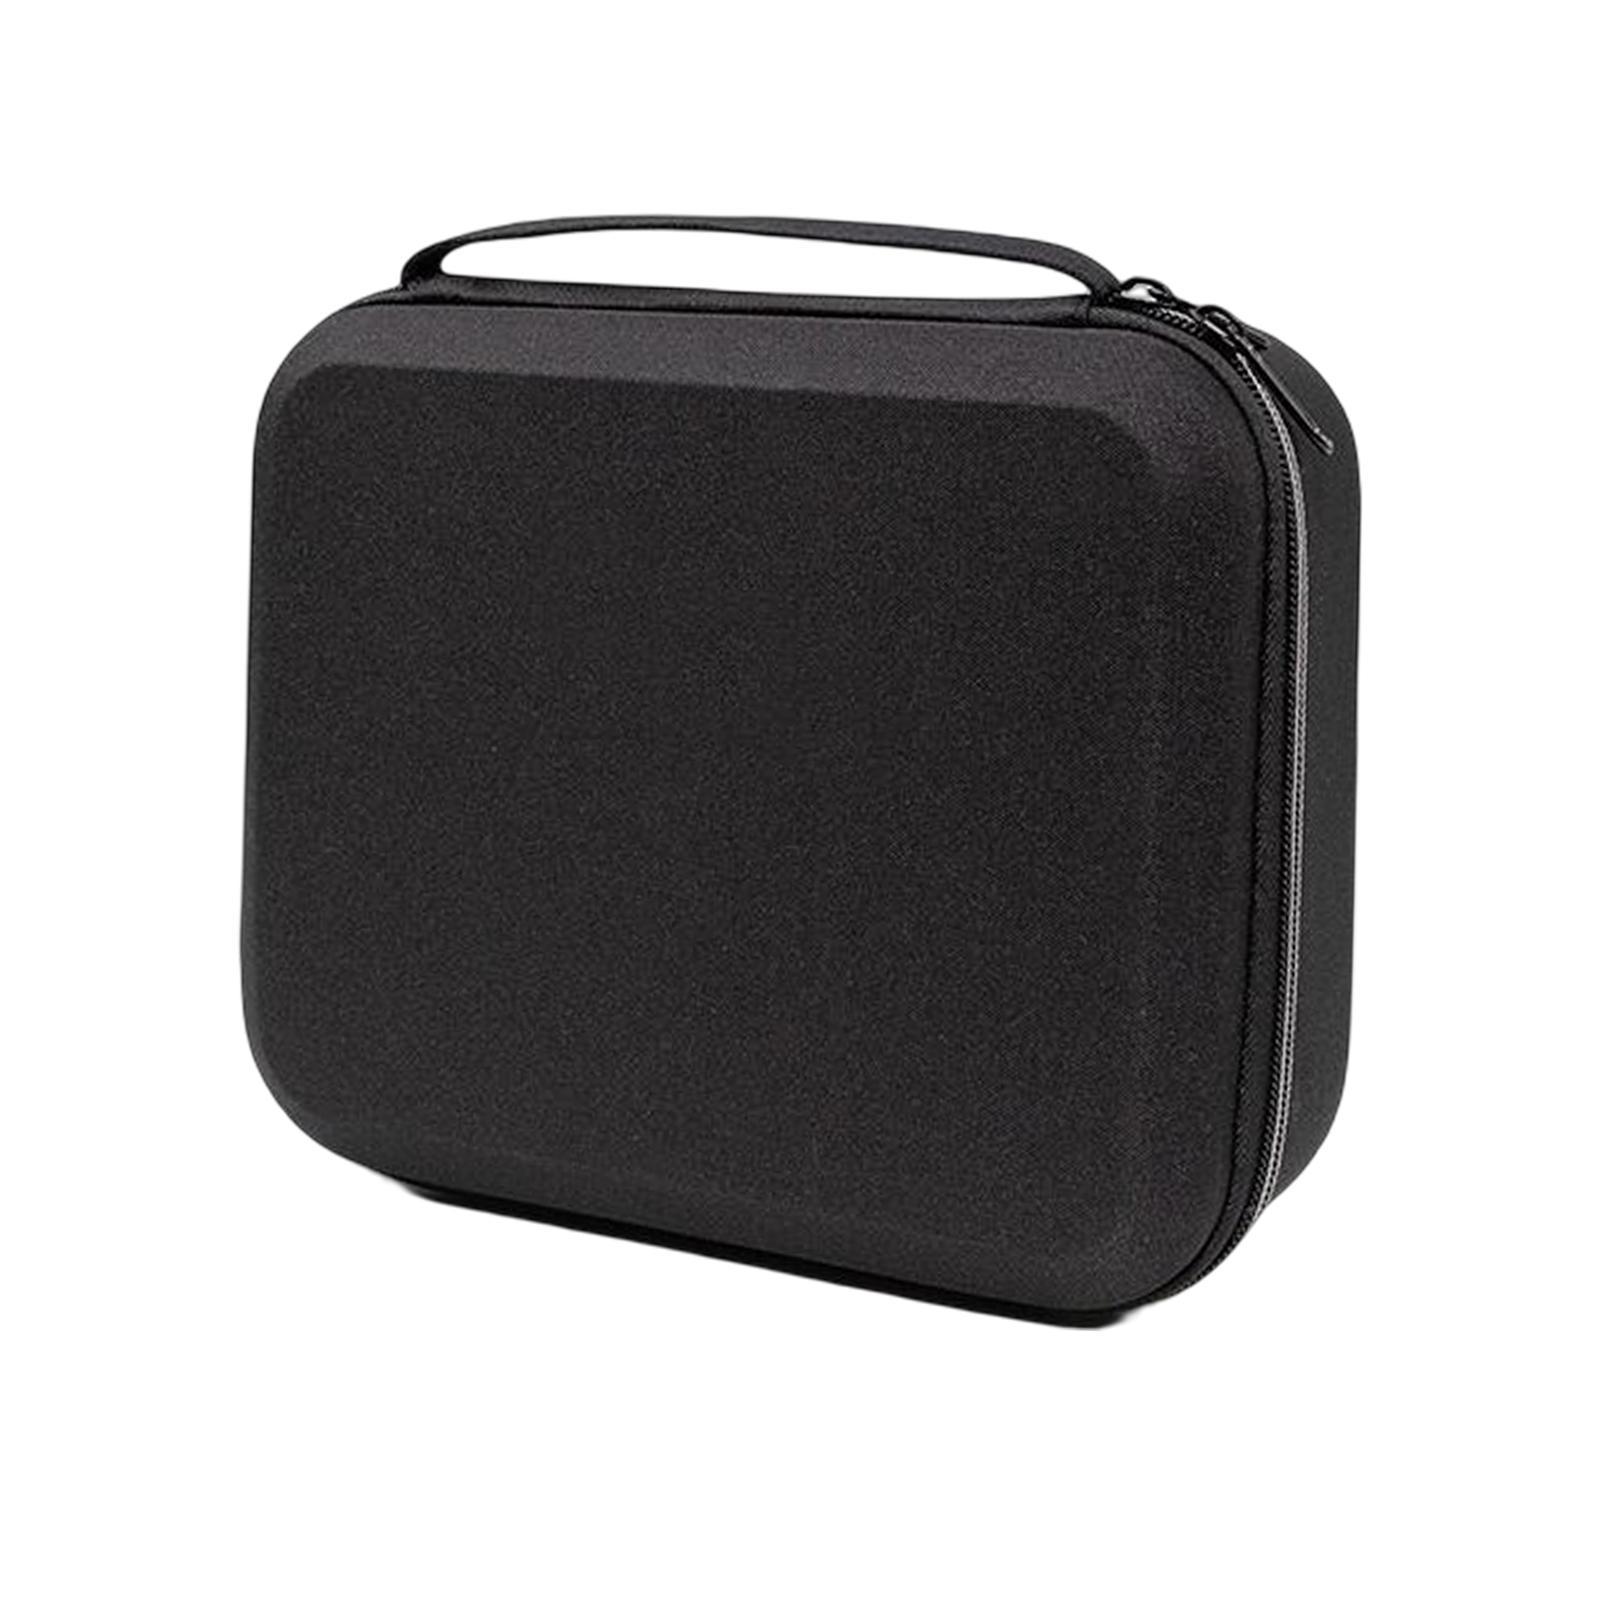 Hình ảnh EVA Compact Camera Case Camera Case Bag for Digital Camera Travel Accs